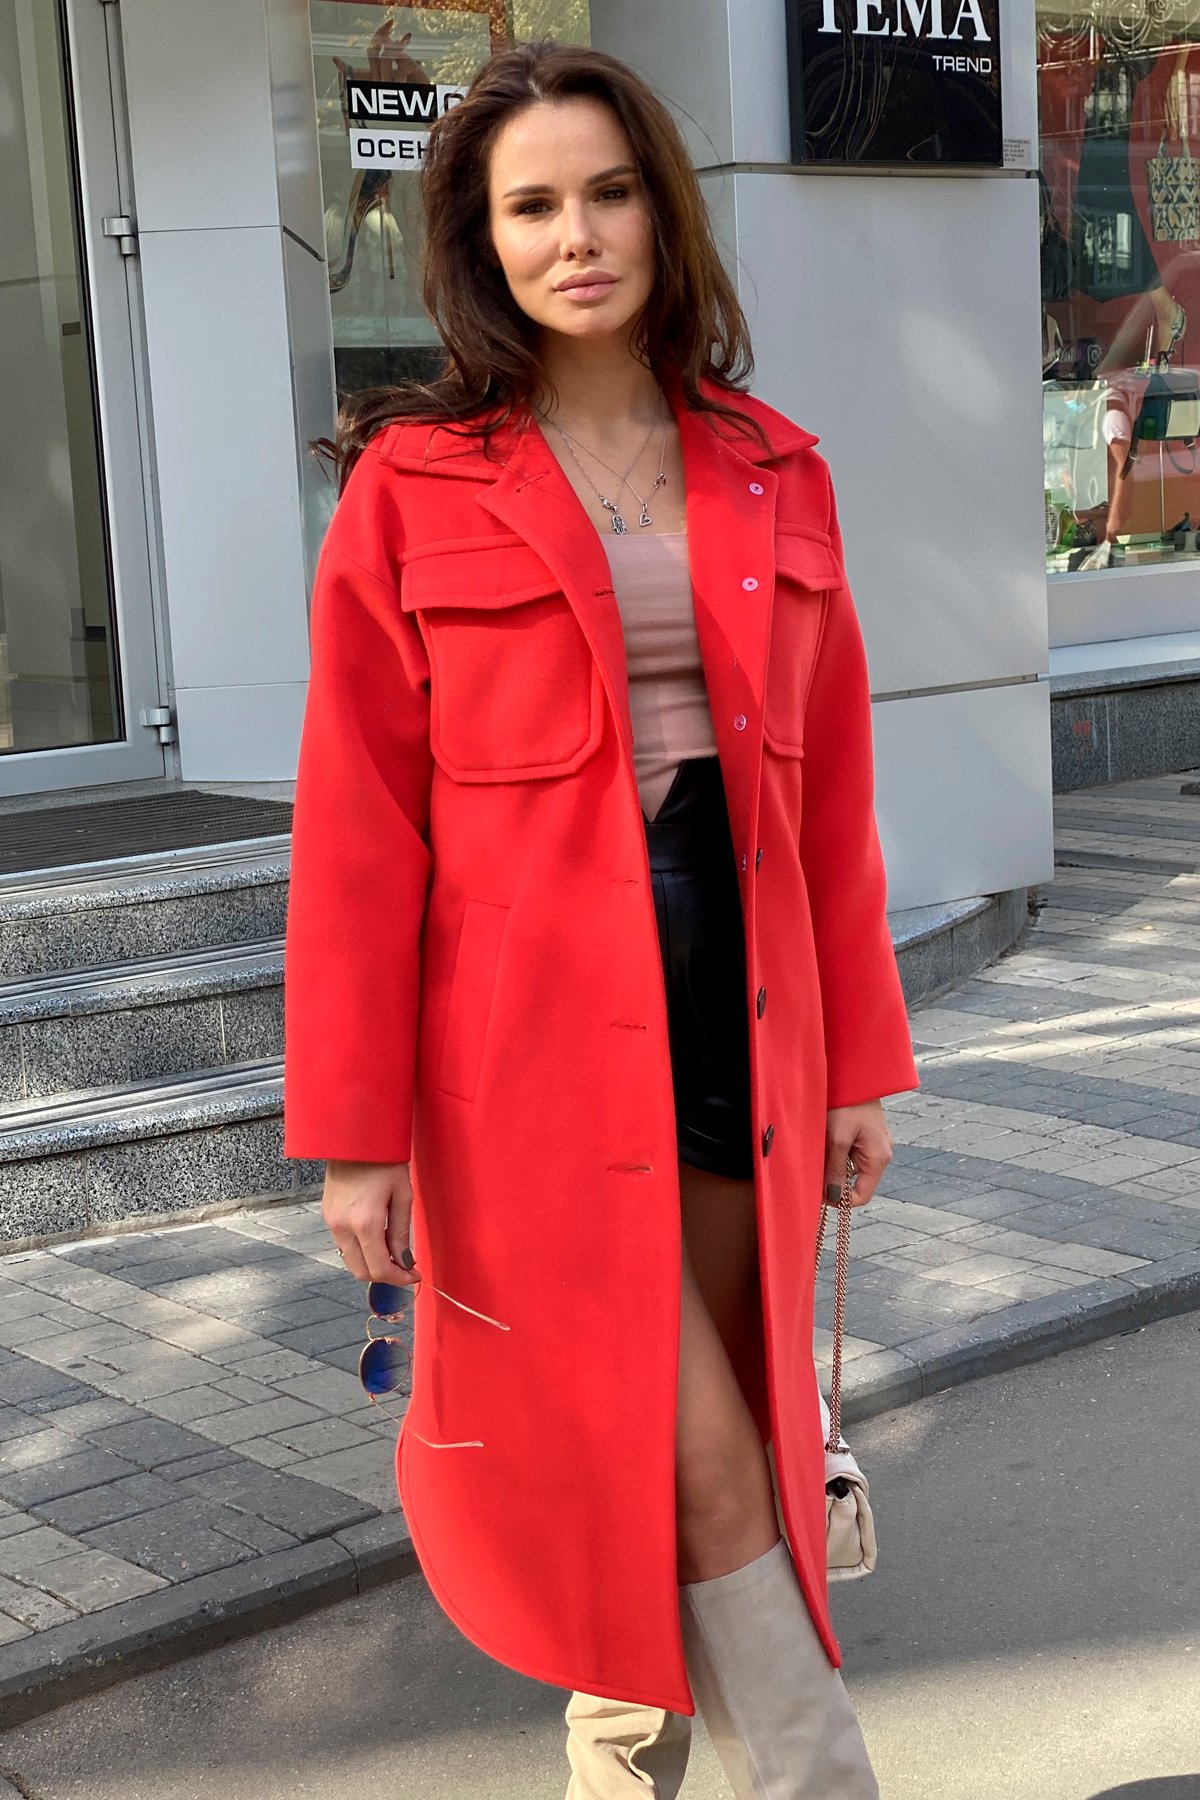 Ола зимнее пальто из гладкого кашемира 9987 АРТ. 46284 Цвет: Красный - фото 2, интернет магазин tm-modus.ru